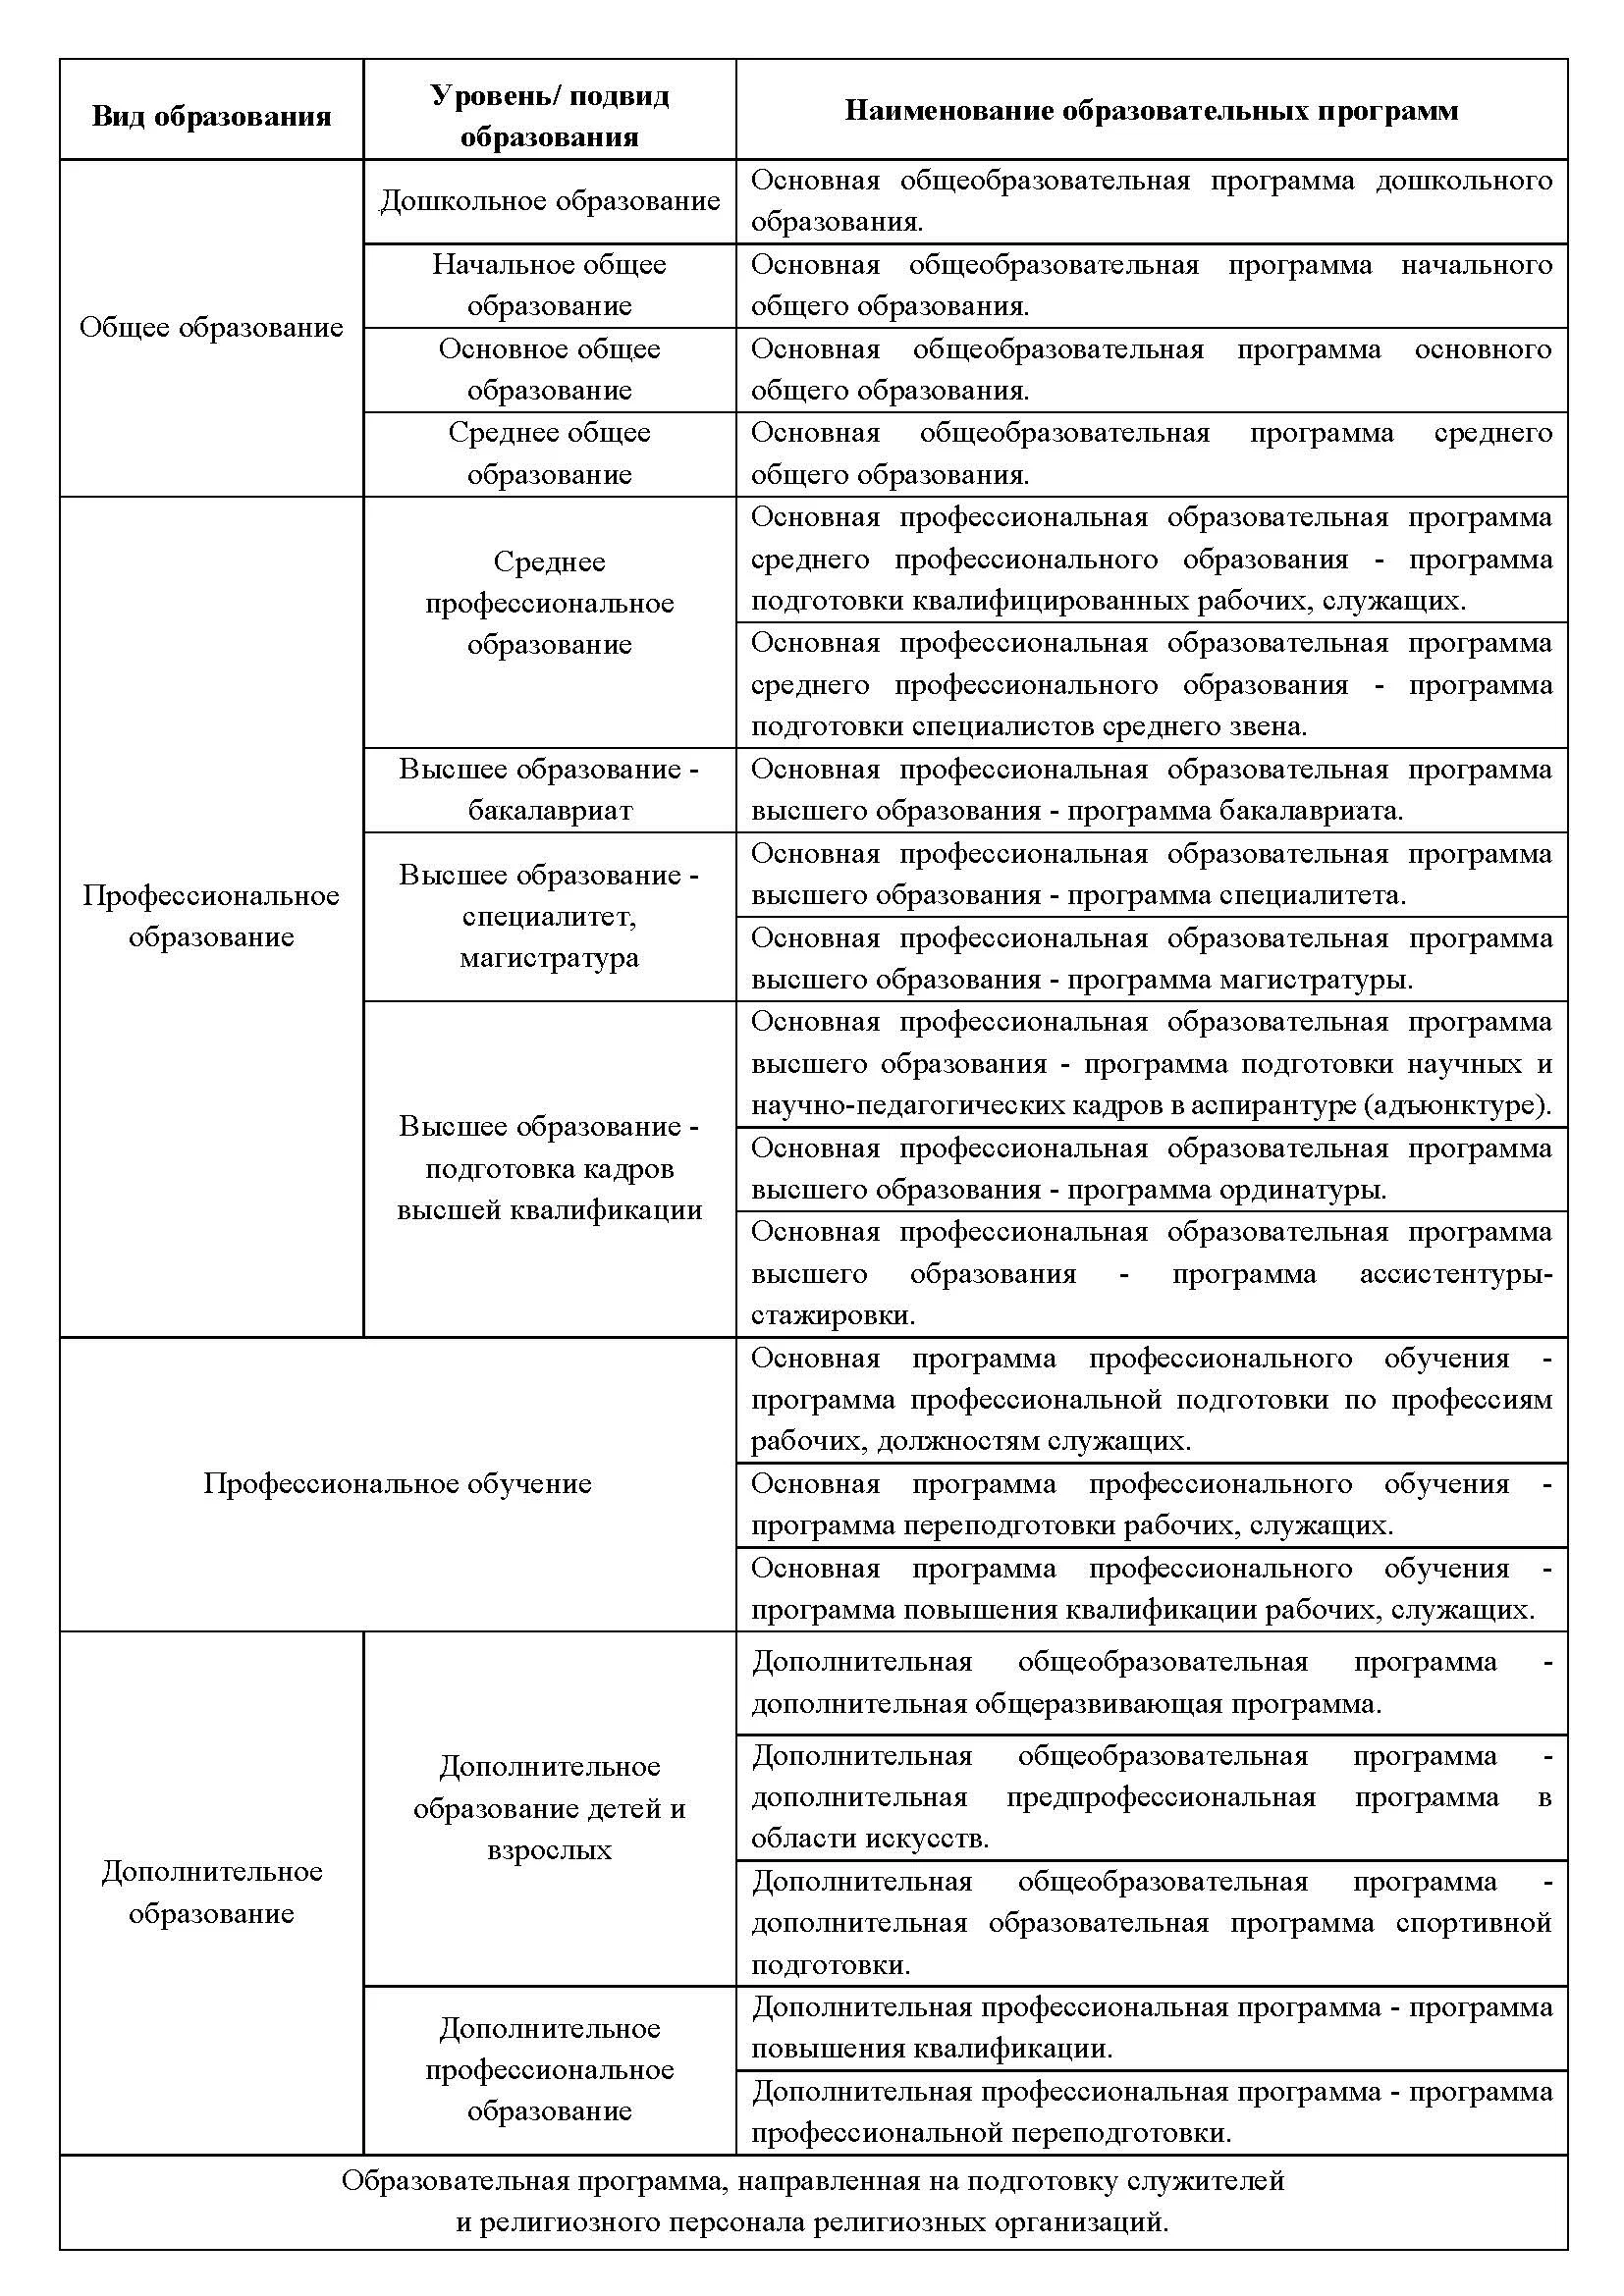 Образовательные программы, реализуемые в РФ